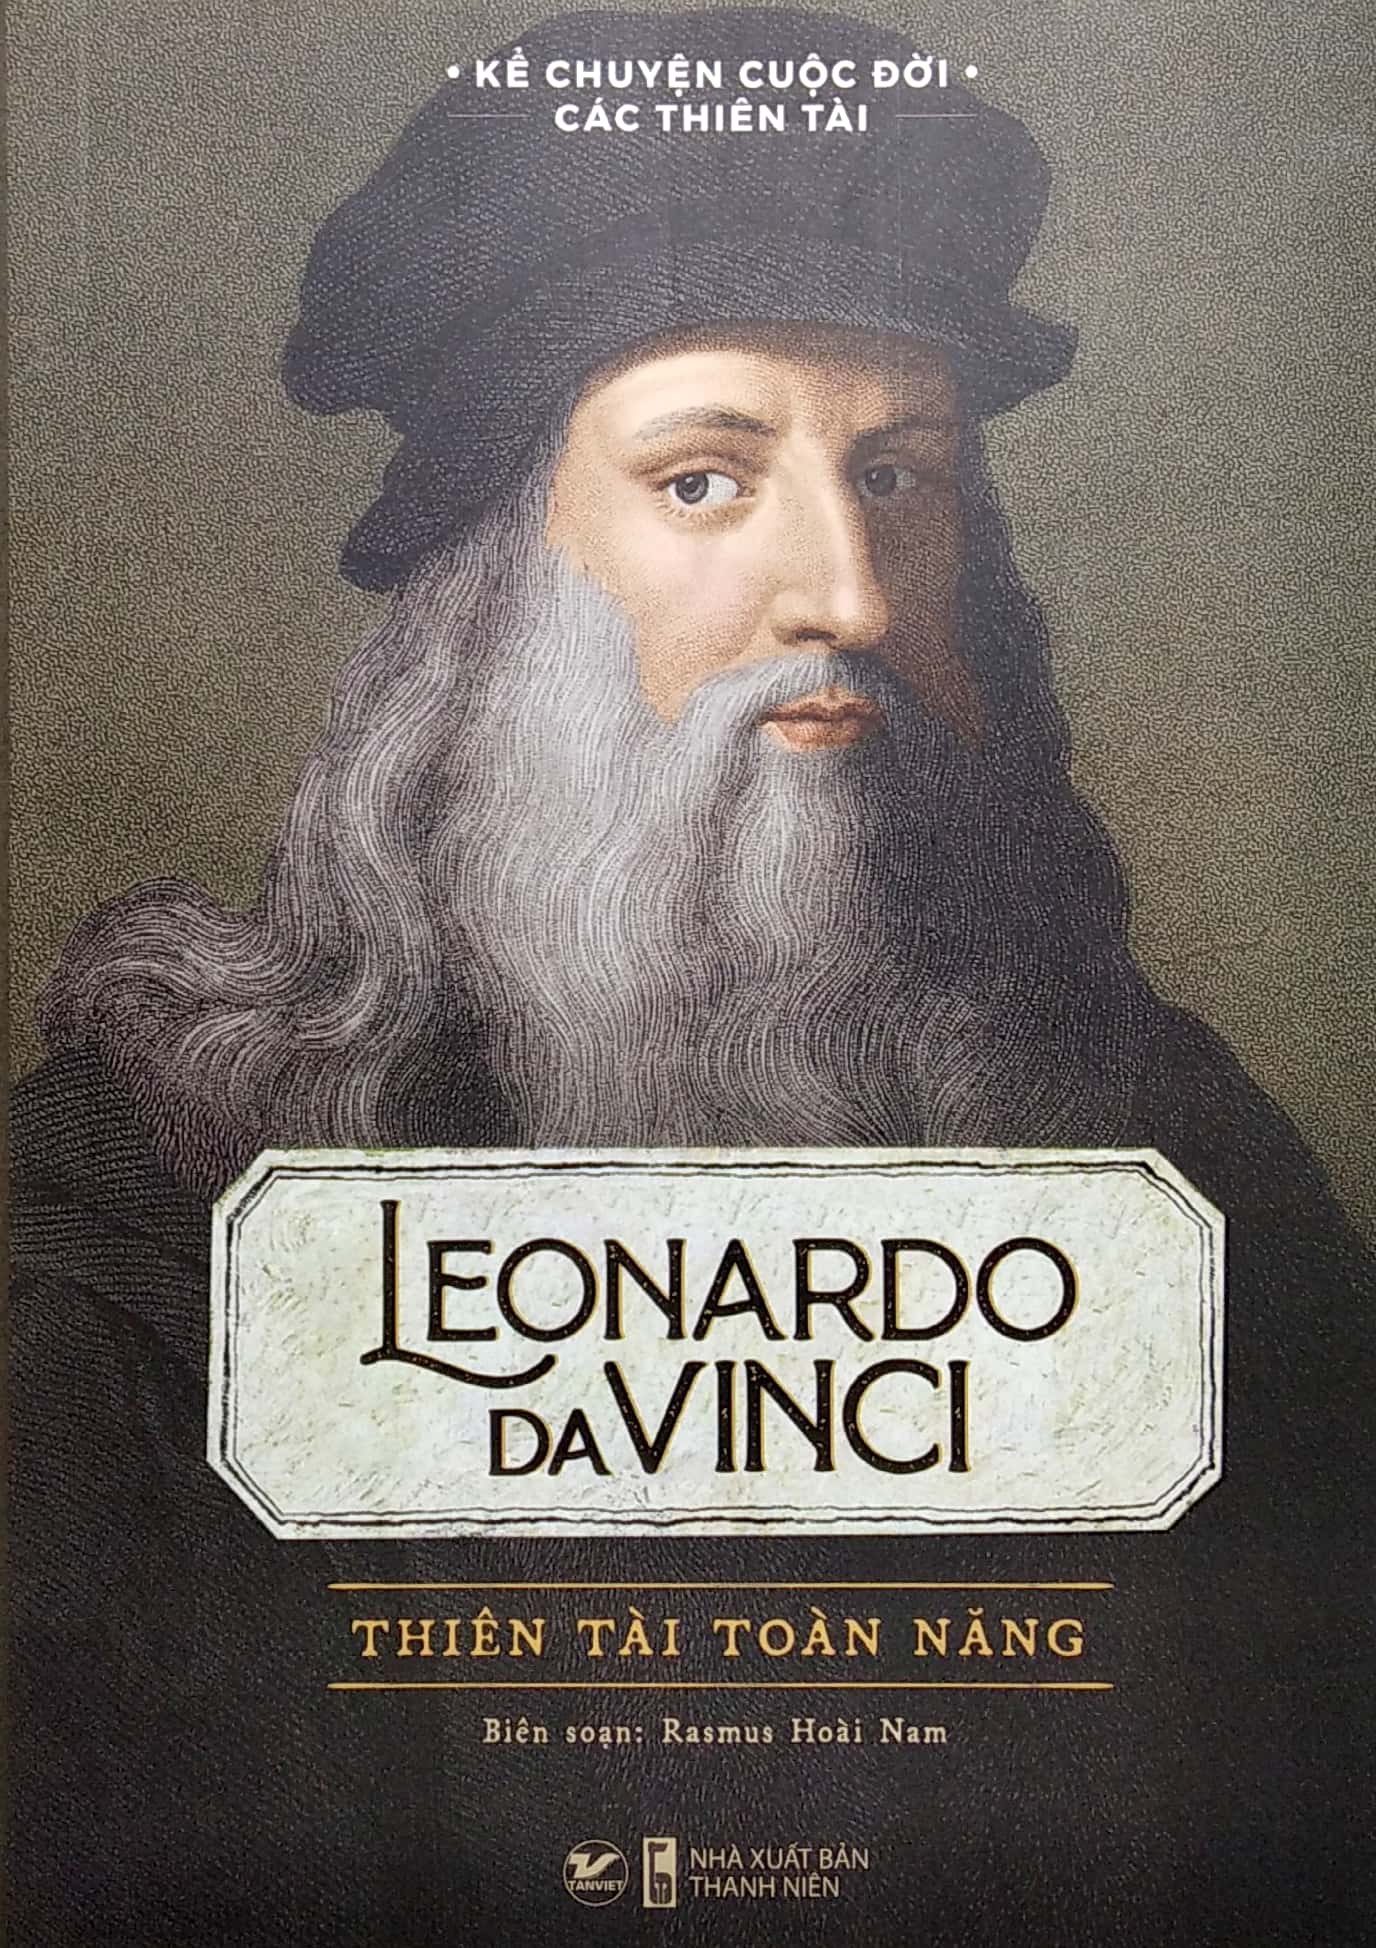 Kể Chuyện Cuộc Đời Các Thiên Tài: Leonardo Da Vinci - Thiên Tài Toàn Năng PDF